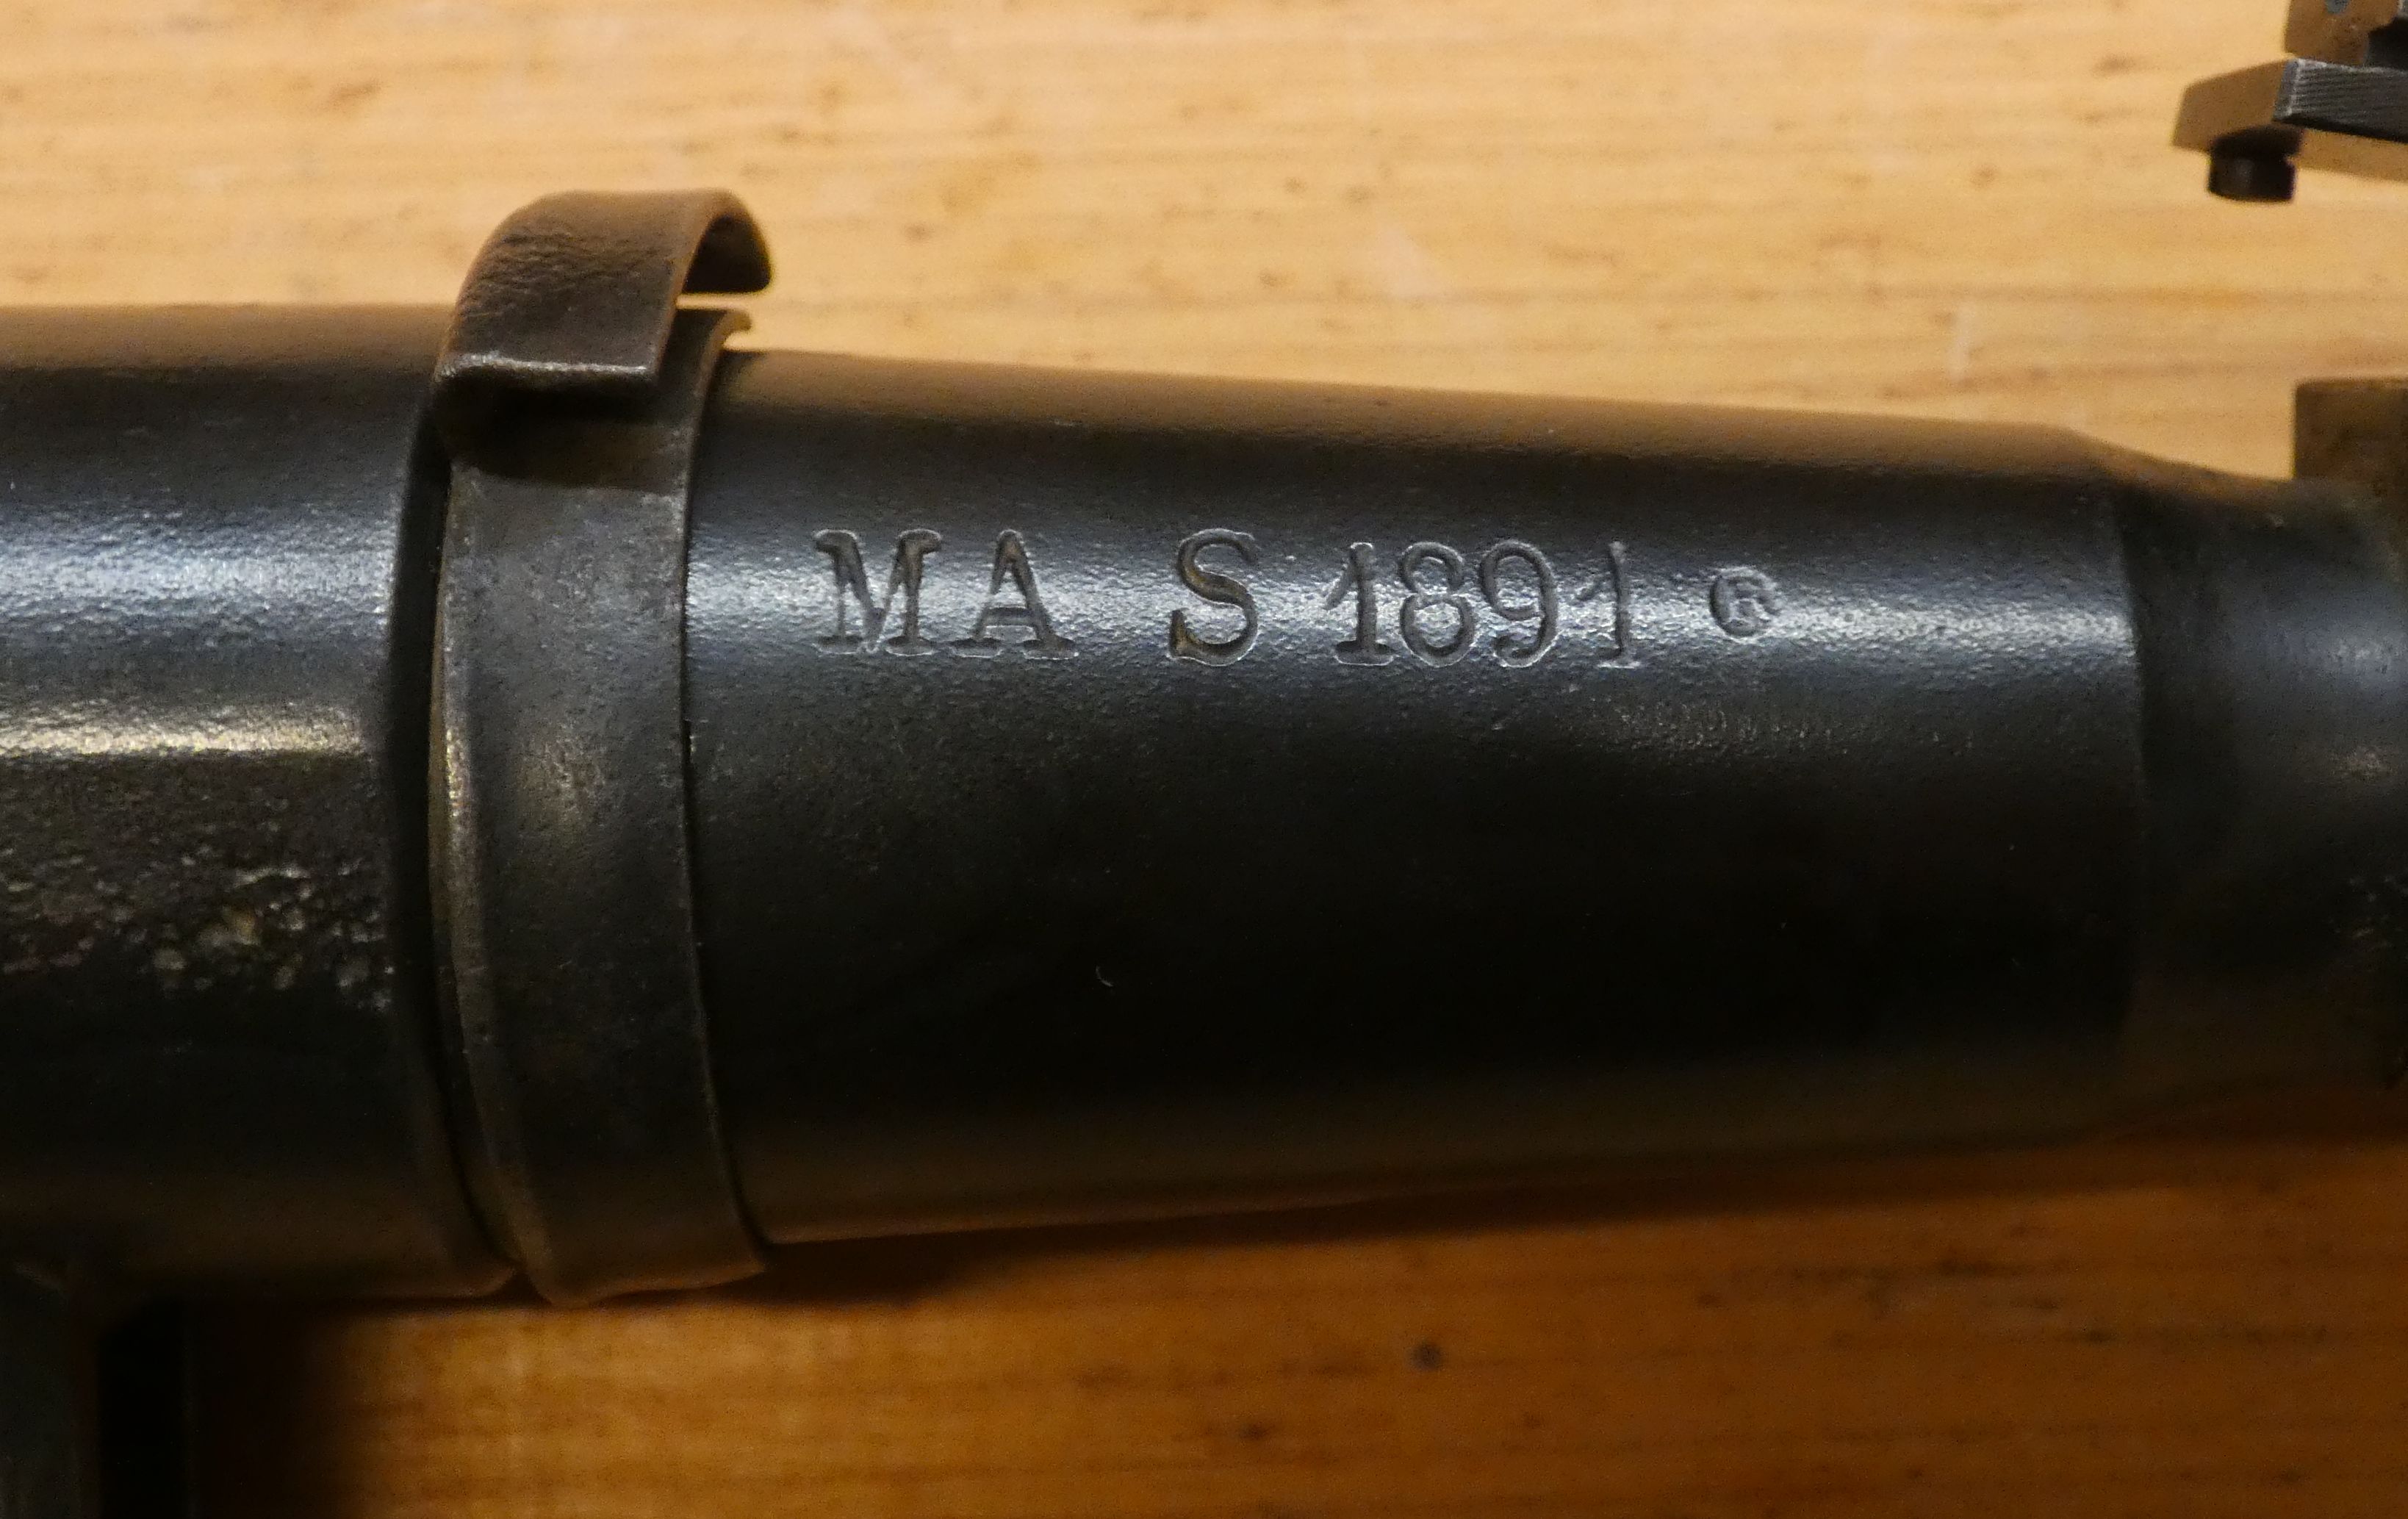 présentation d'une carabine Mle 1890 transformée 1916 07